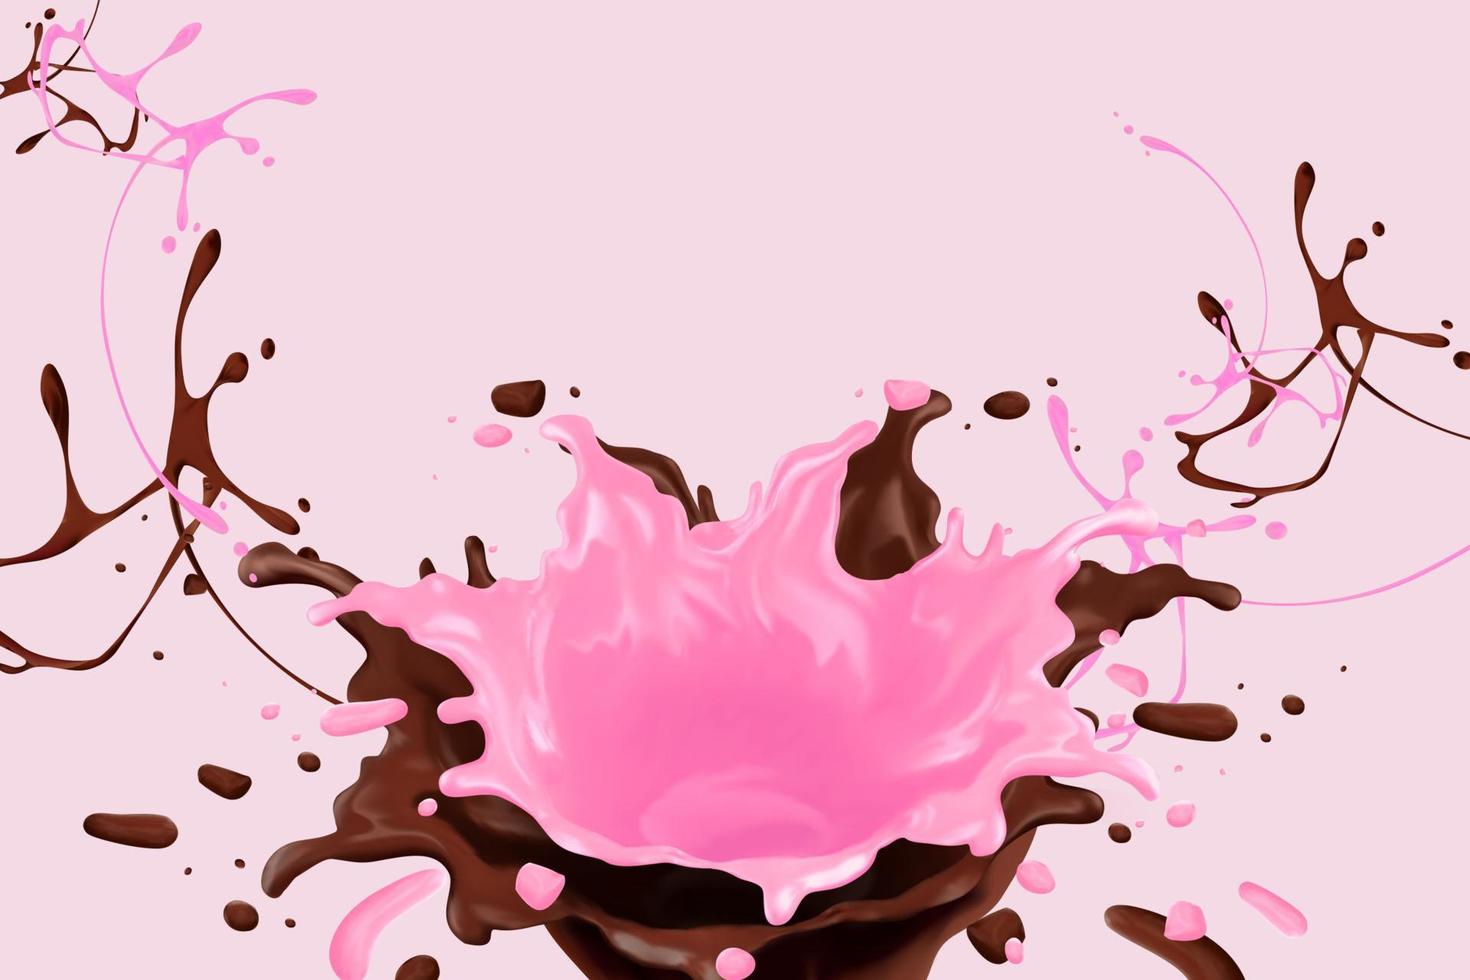 choklad och jordgubb sås stänk i de luft, 3d illustration vektor